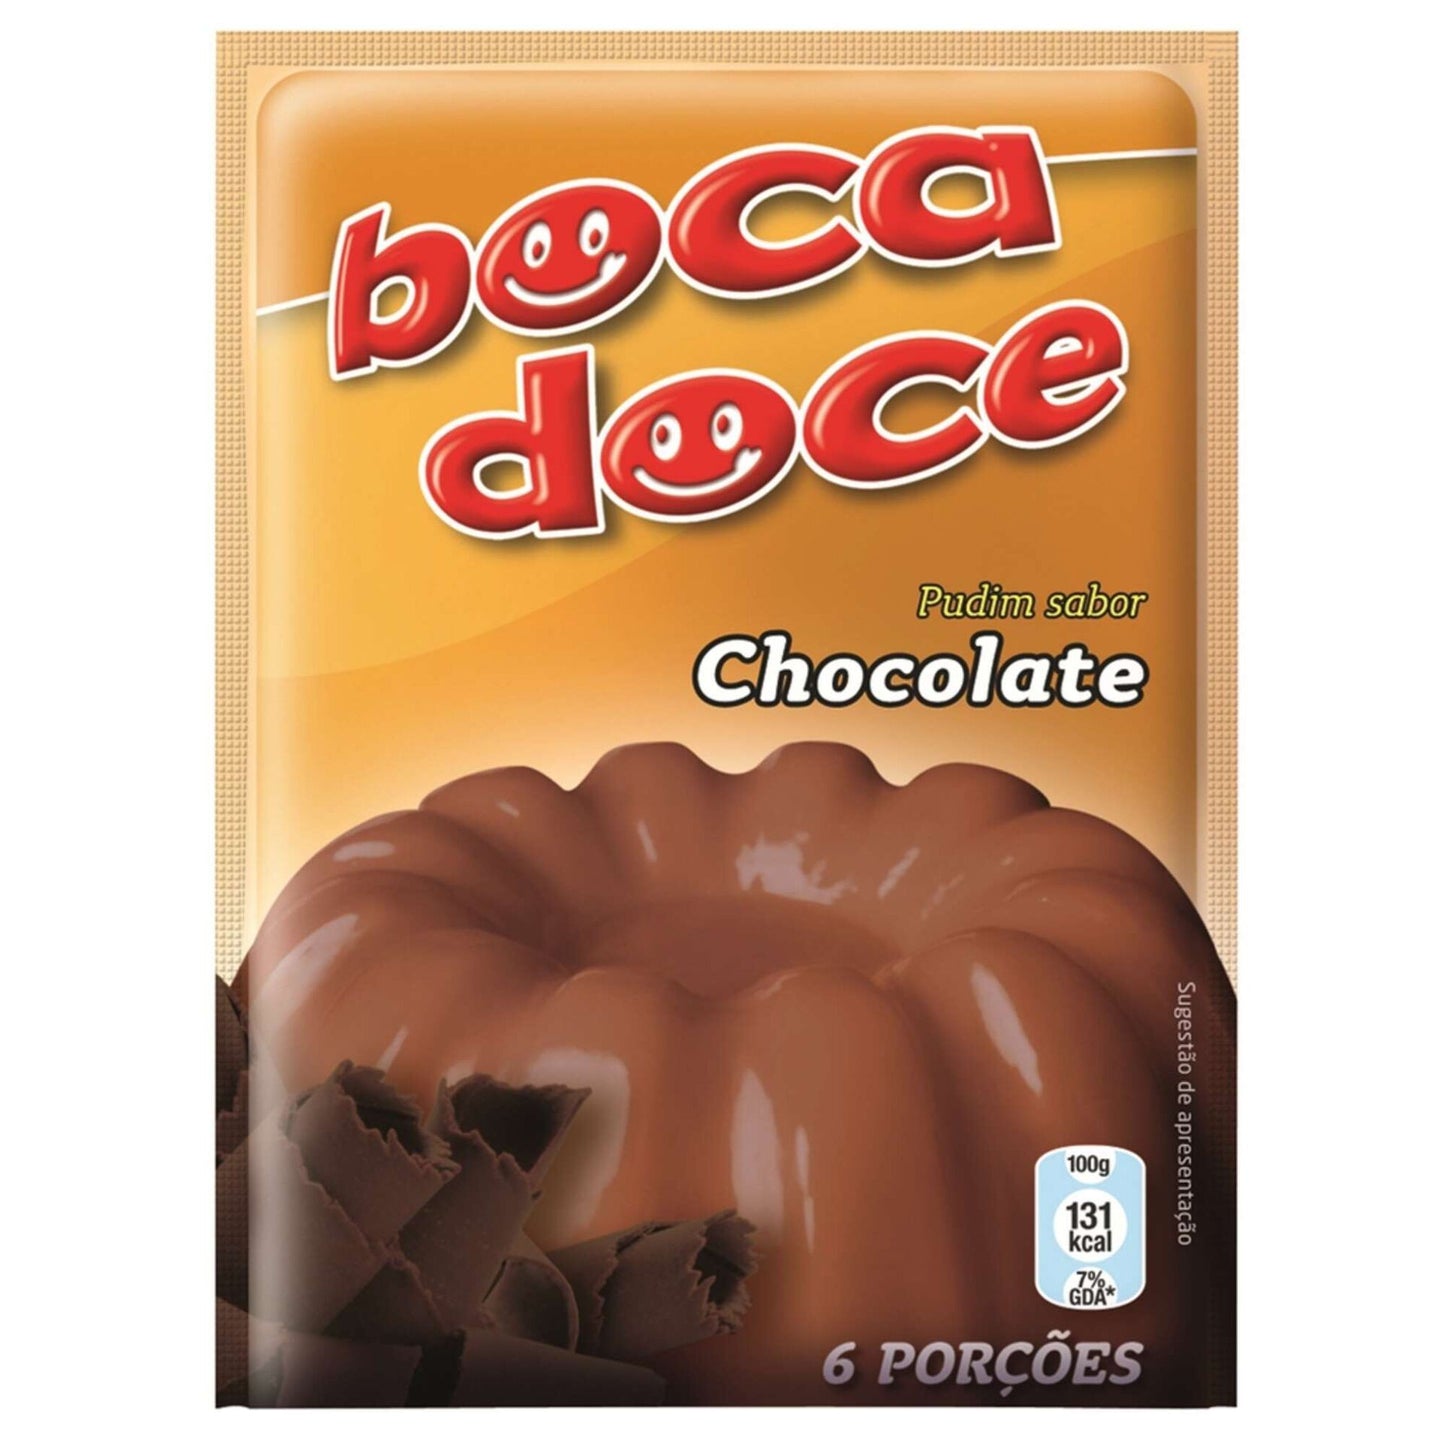 Budín de chocolate Boca Doce emb. 22 gramos